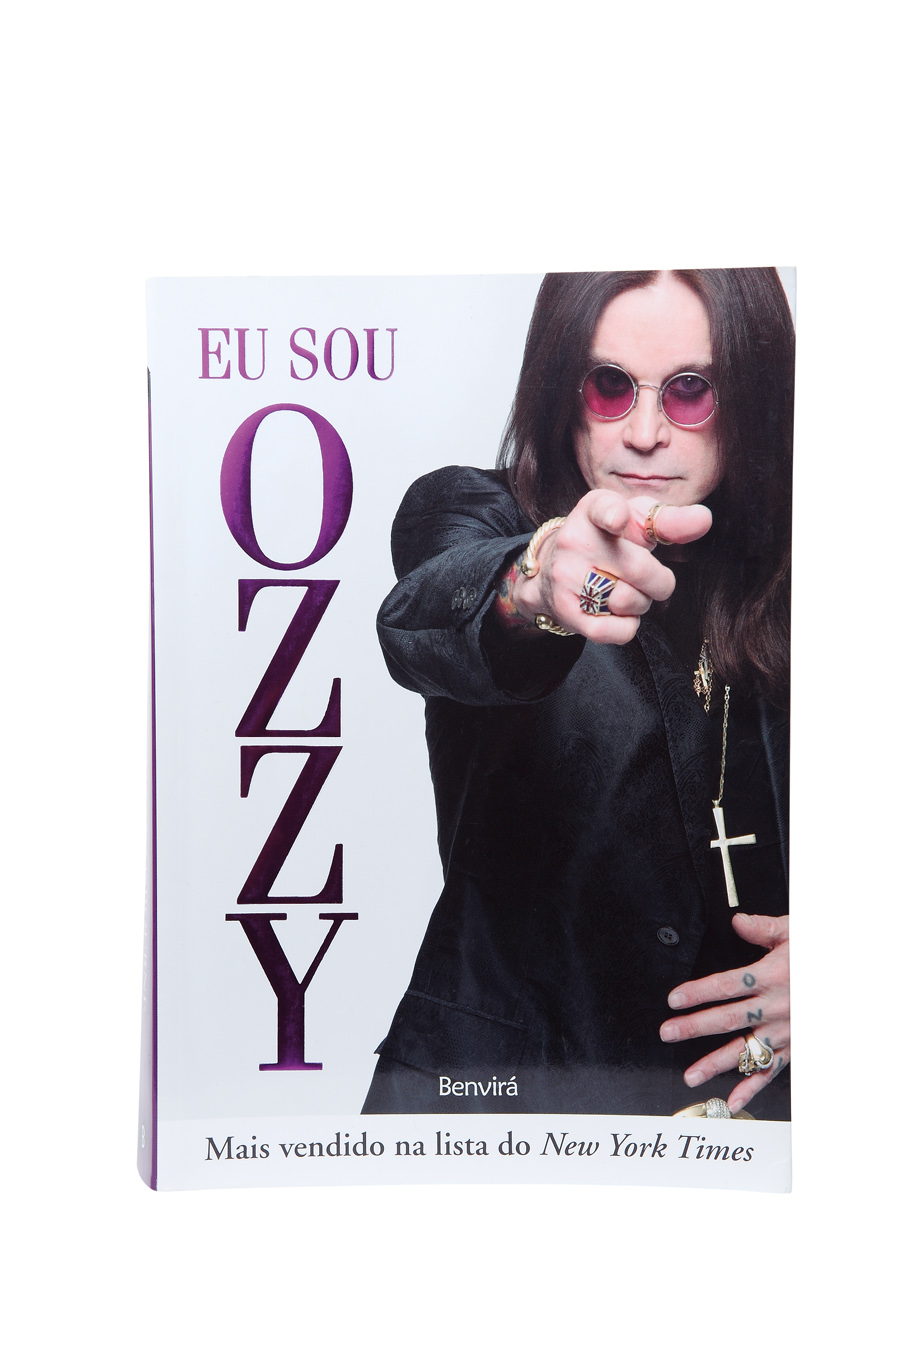 10. Livro Eu Sou Ozzy “As histórias da lenda Ozzy Osbourne beiram o absurdo. Imperdível.”